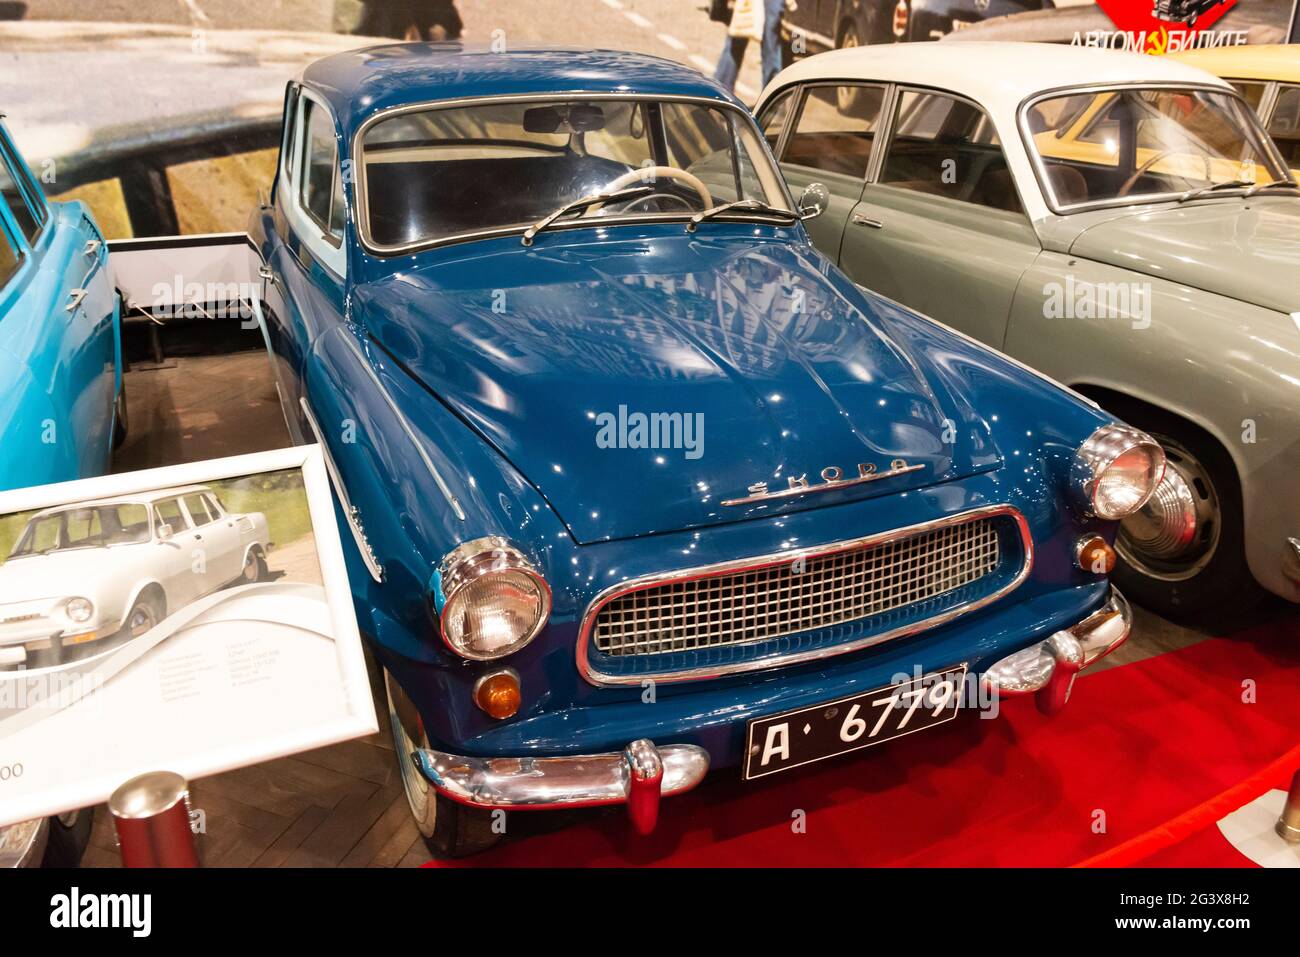 Museo del coche. Coche checoslovaco Škoda Octavia del 50s en exhibición en el museo de coches del socialismo en la ciudad de Peshtera, Bulgaria, Europa del Este Foto de stock